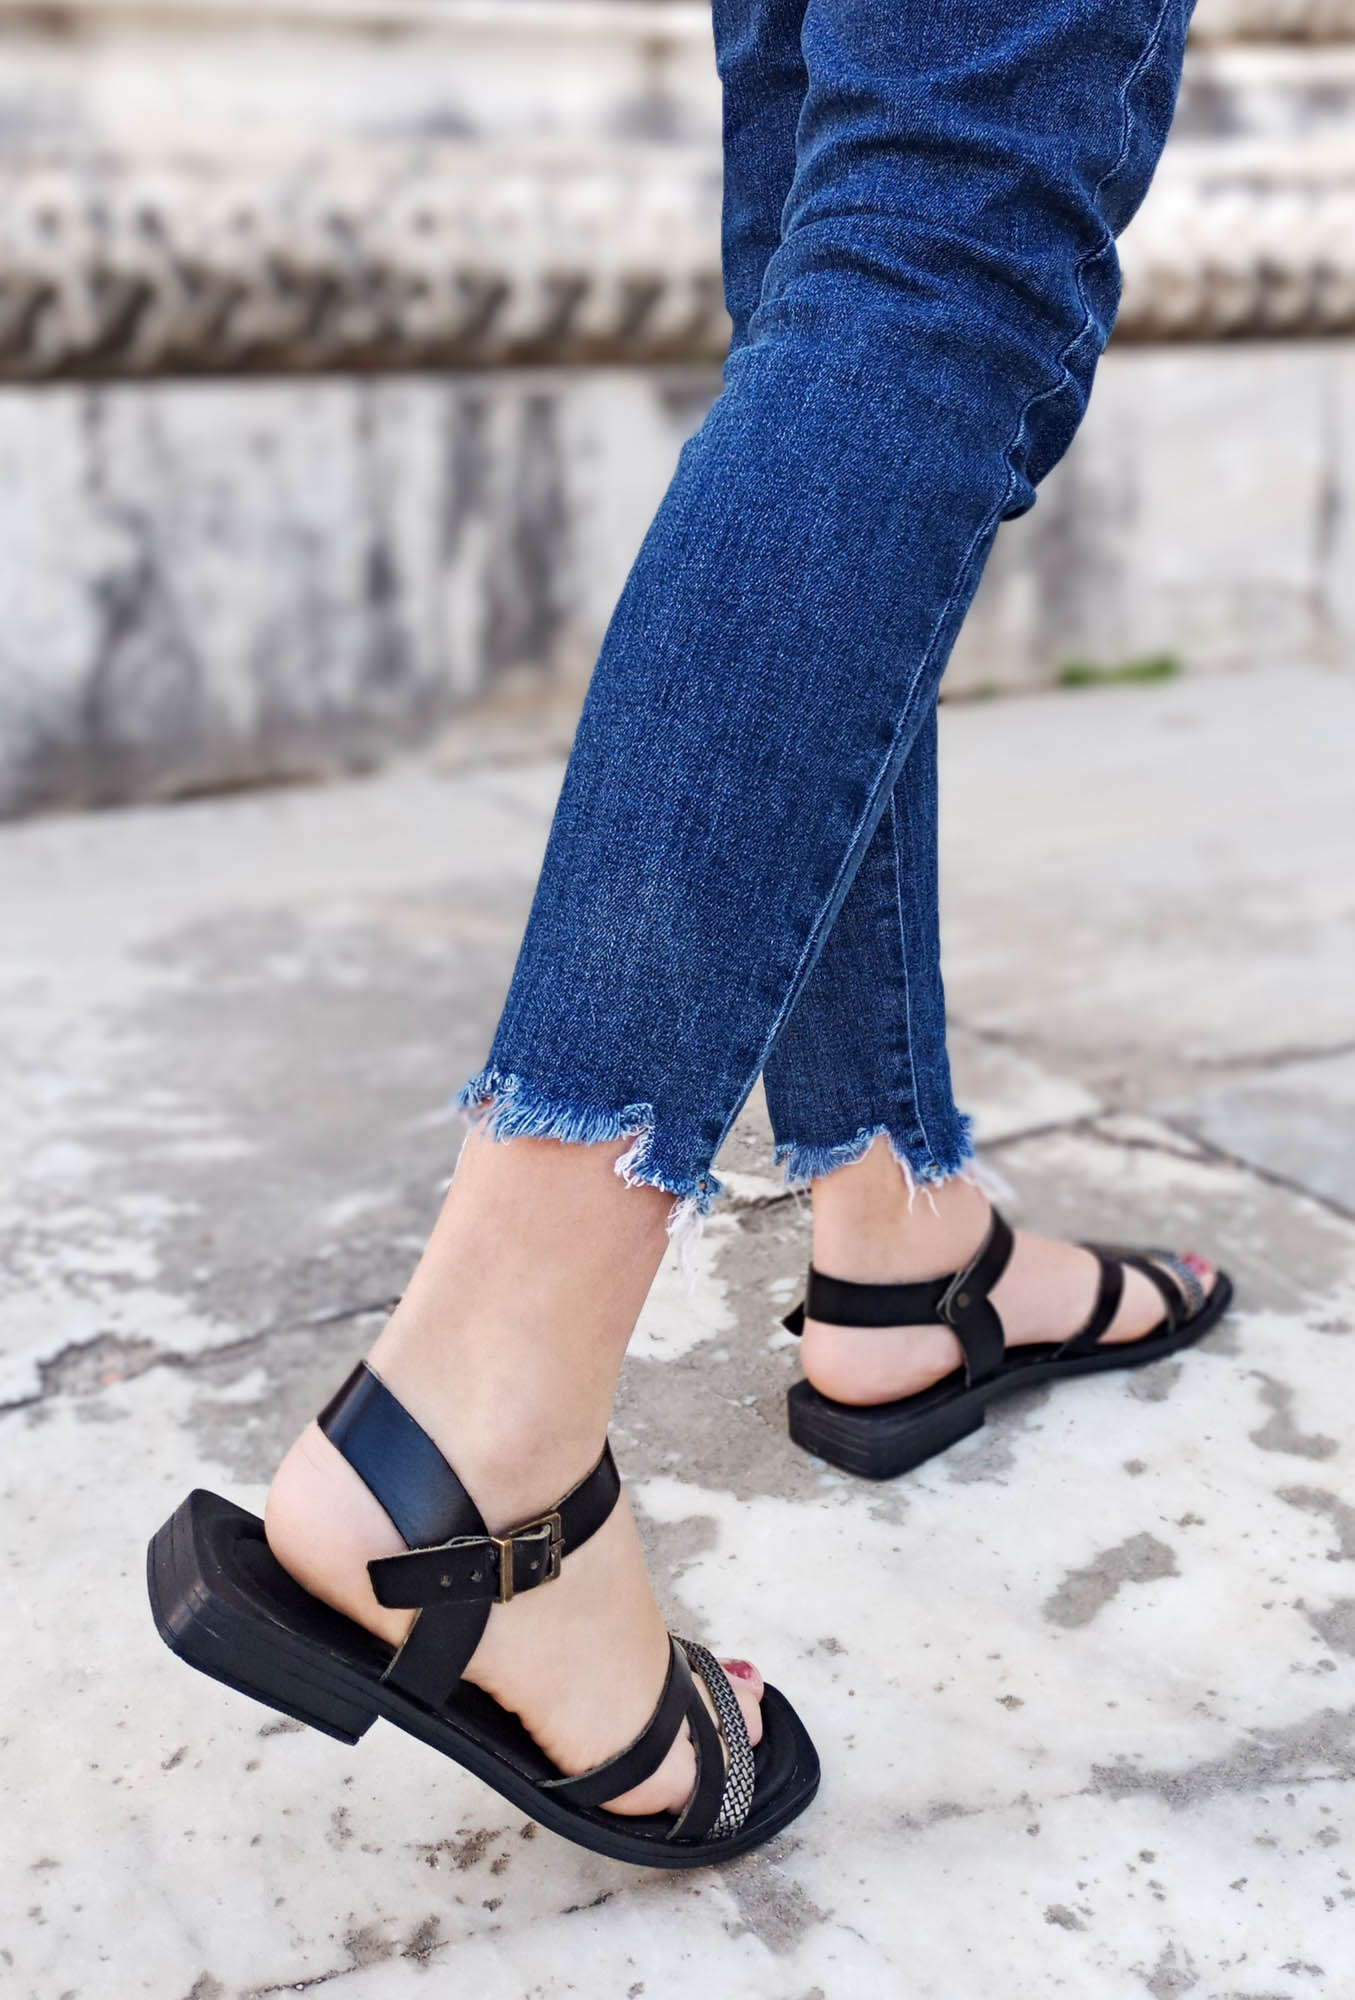 GDT Ayakkabı Siyah Platin Renk Hakiki Deri Bantlı Kadın Sandalet